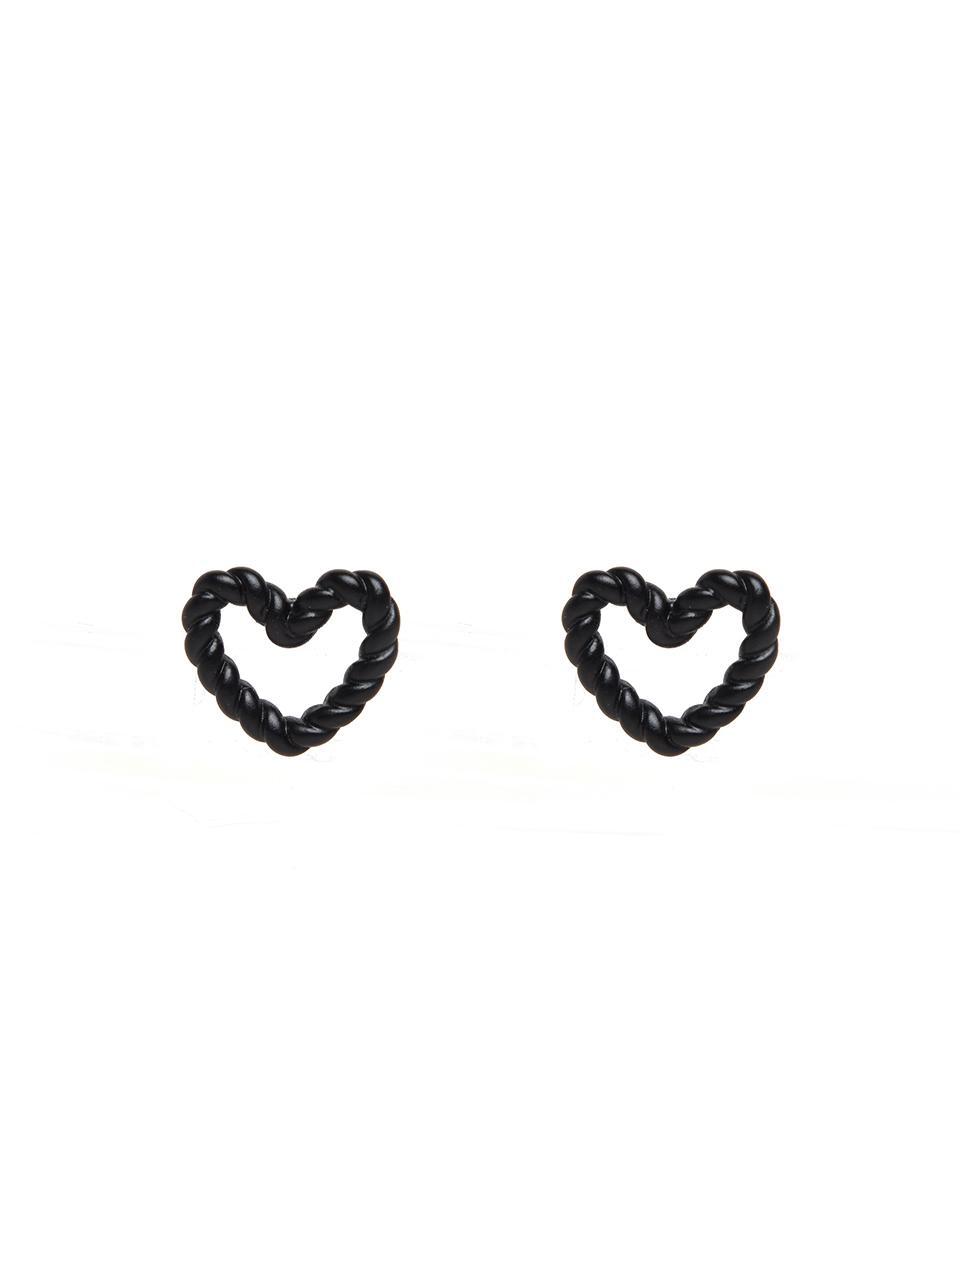 CKE102 Twisted Black Line Heart Earrings